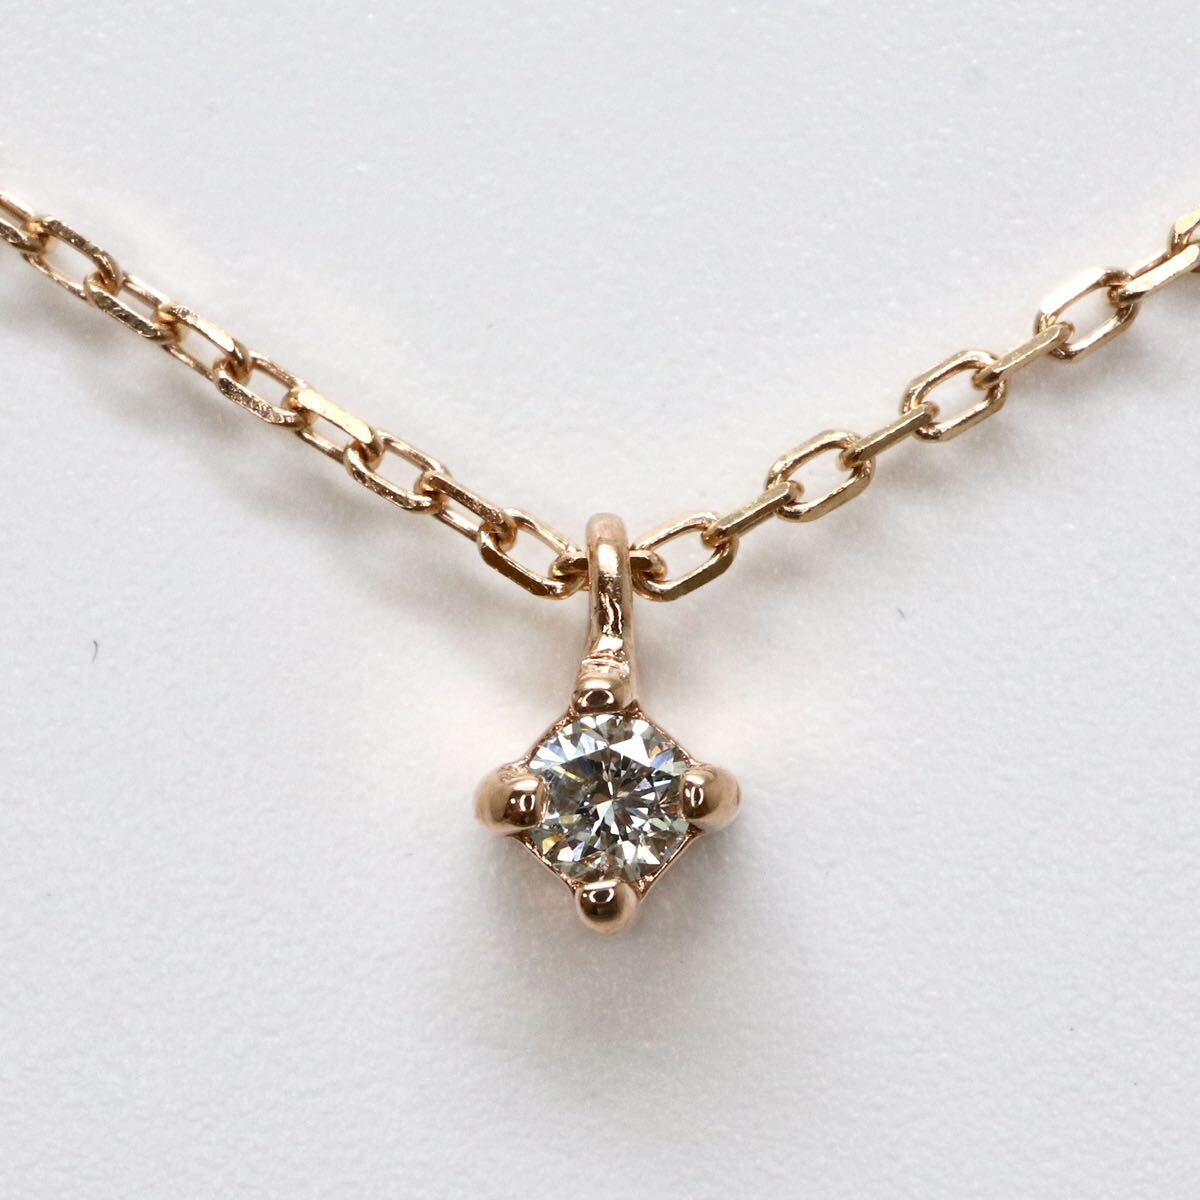 ete(エテ)◆K10 天然ダイヤモンドネックレス◆M 約1.1g 約39.0cm diamond necklace jewelry ジュエリー DE3/DE5の画像1